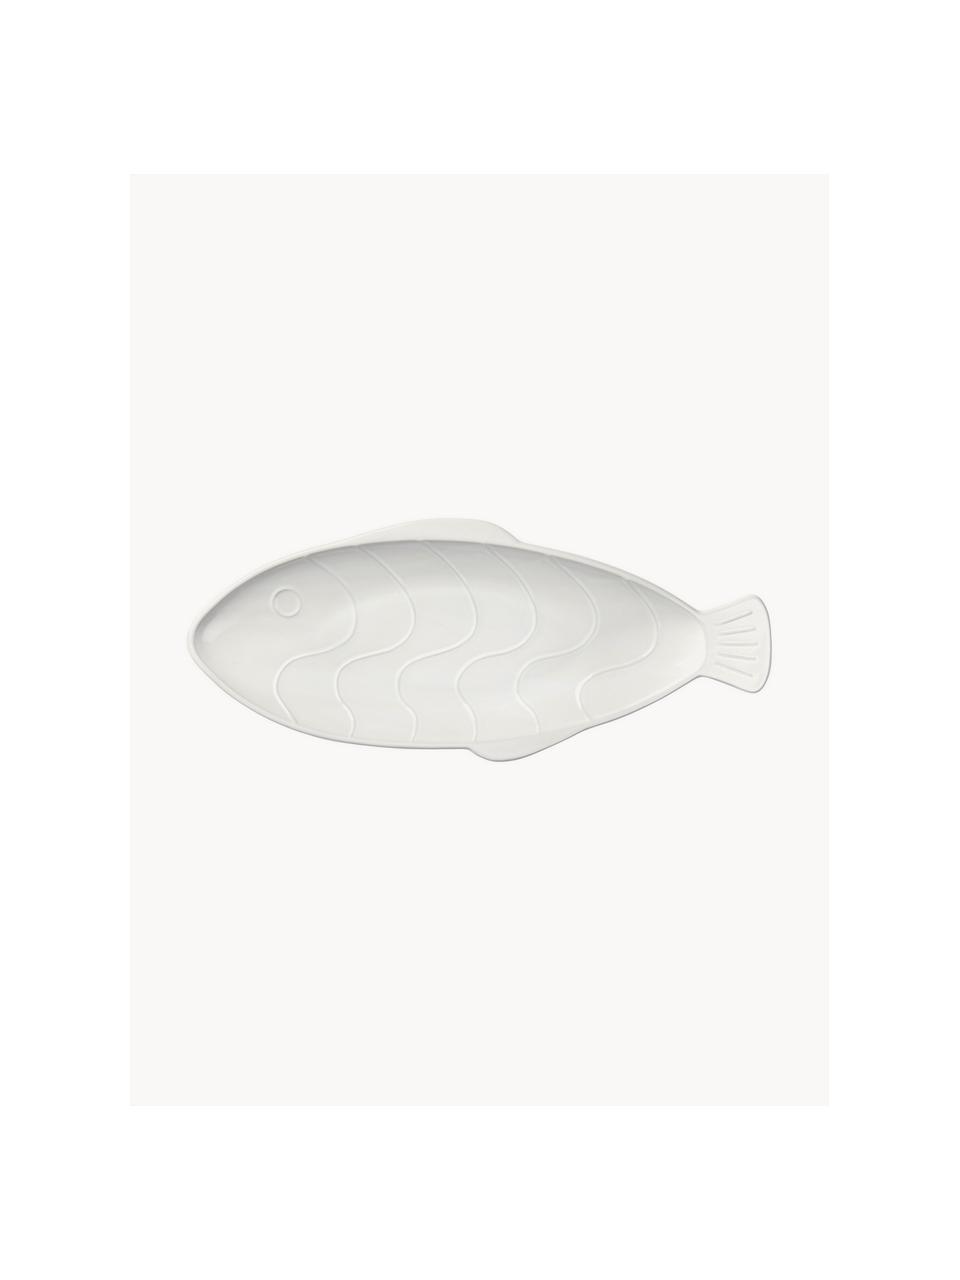 Servierplatte Pesce, Steingut, Weiß, B 41 x T 18 cm